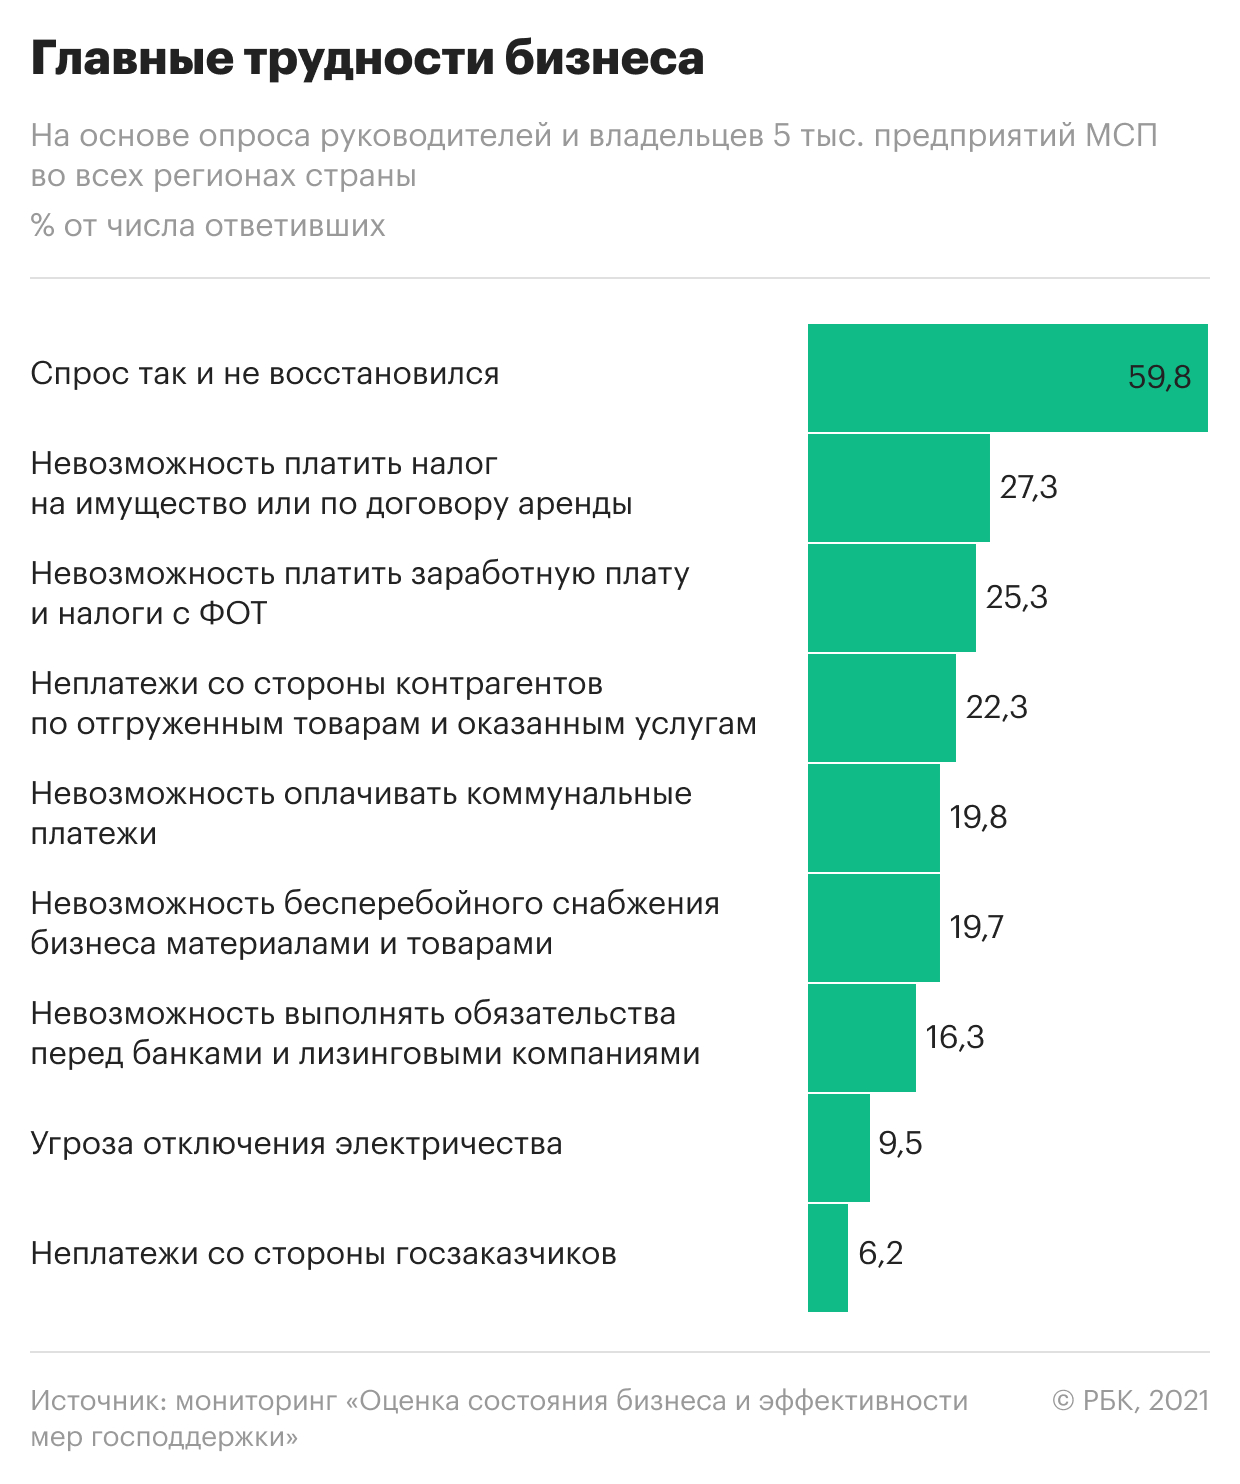 Каждый десятый бизнес в России предупредил о риске закрытия в 2021 году